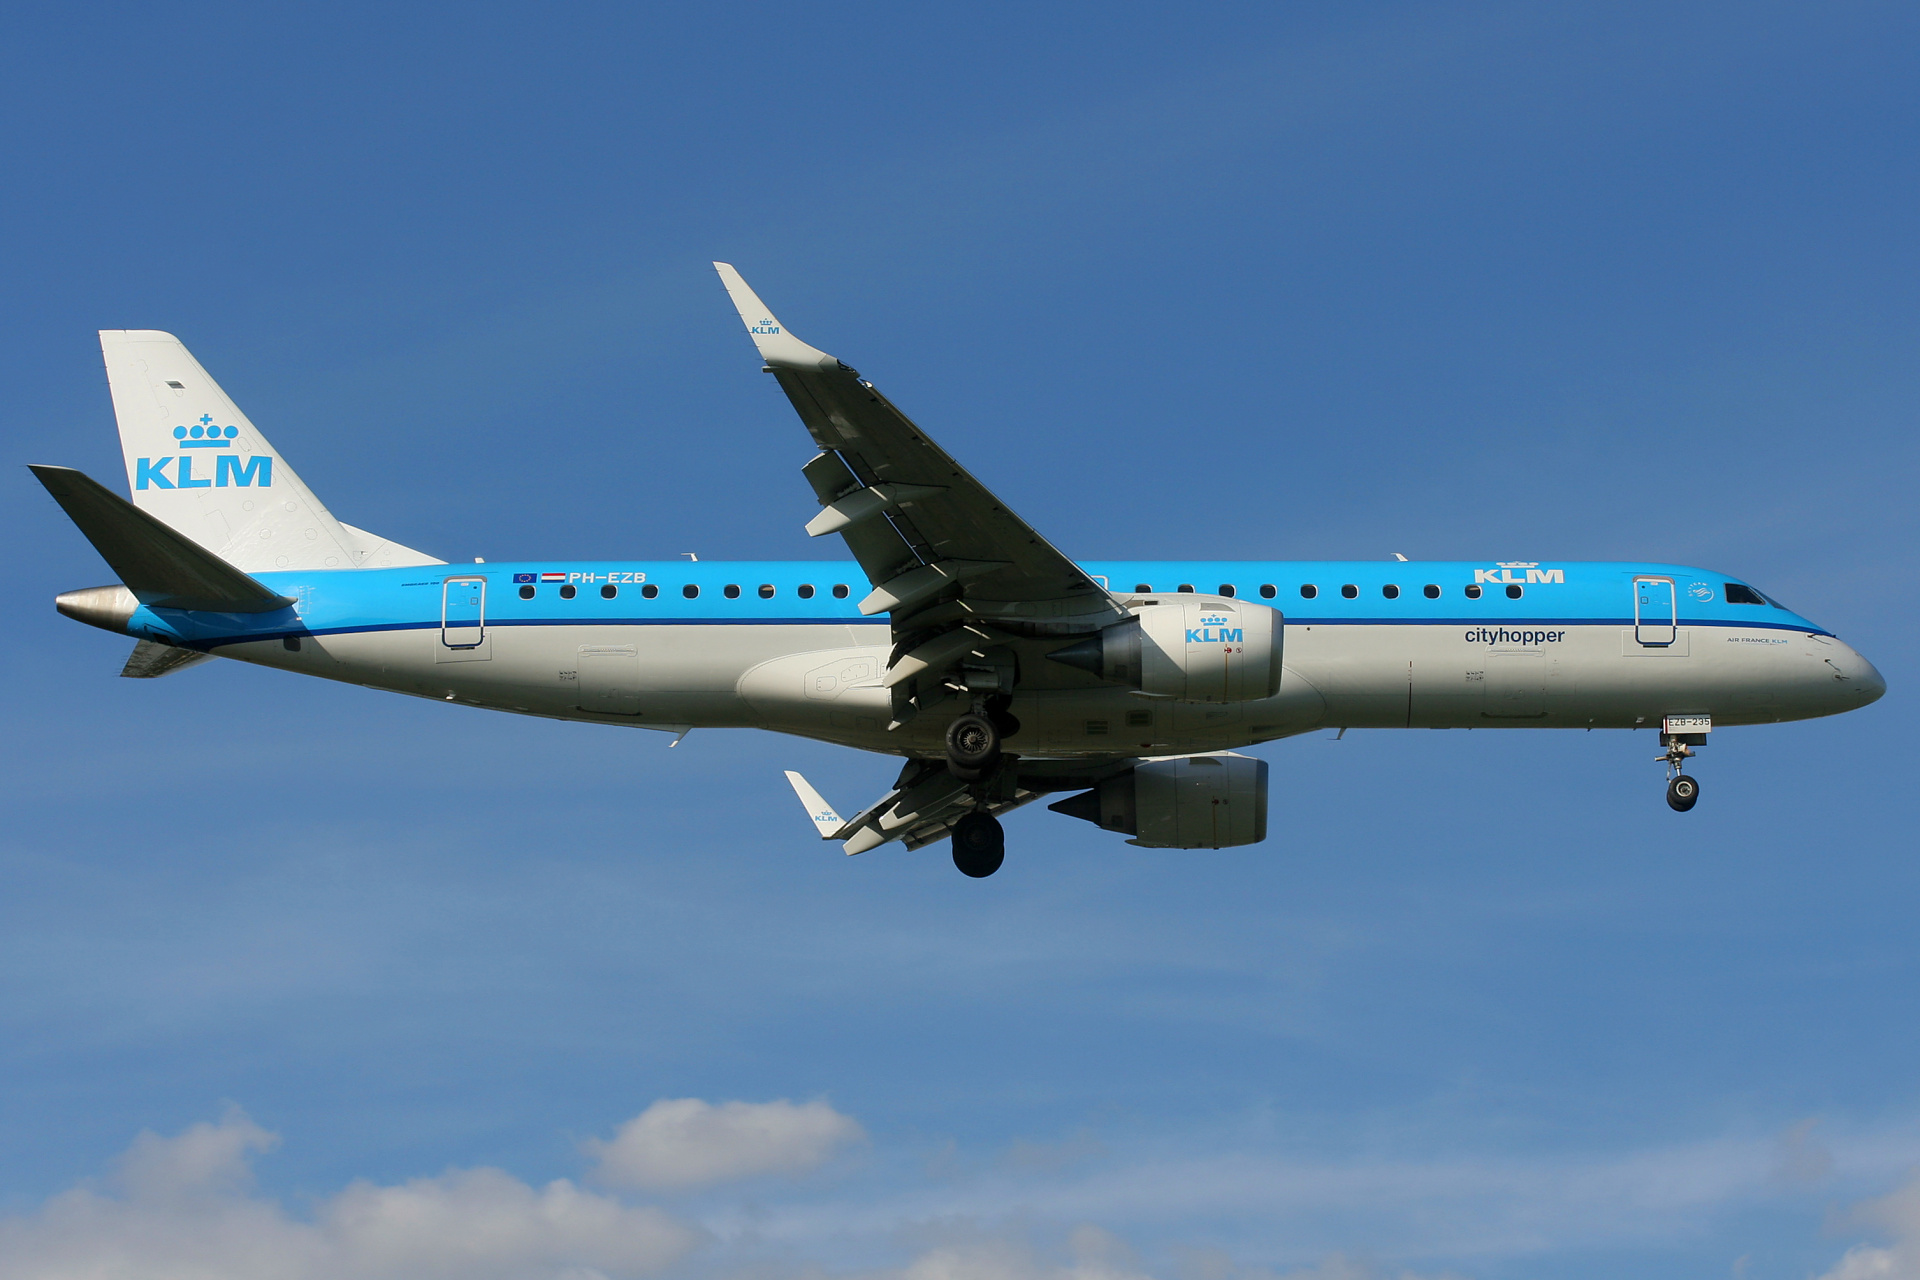 PH-EZB (Aircraft » EPWA Spotting » Embraer E190 » KLM Cityhopper)